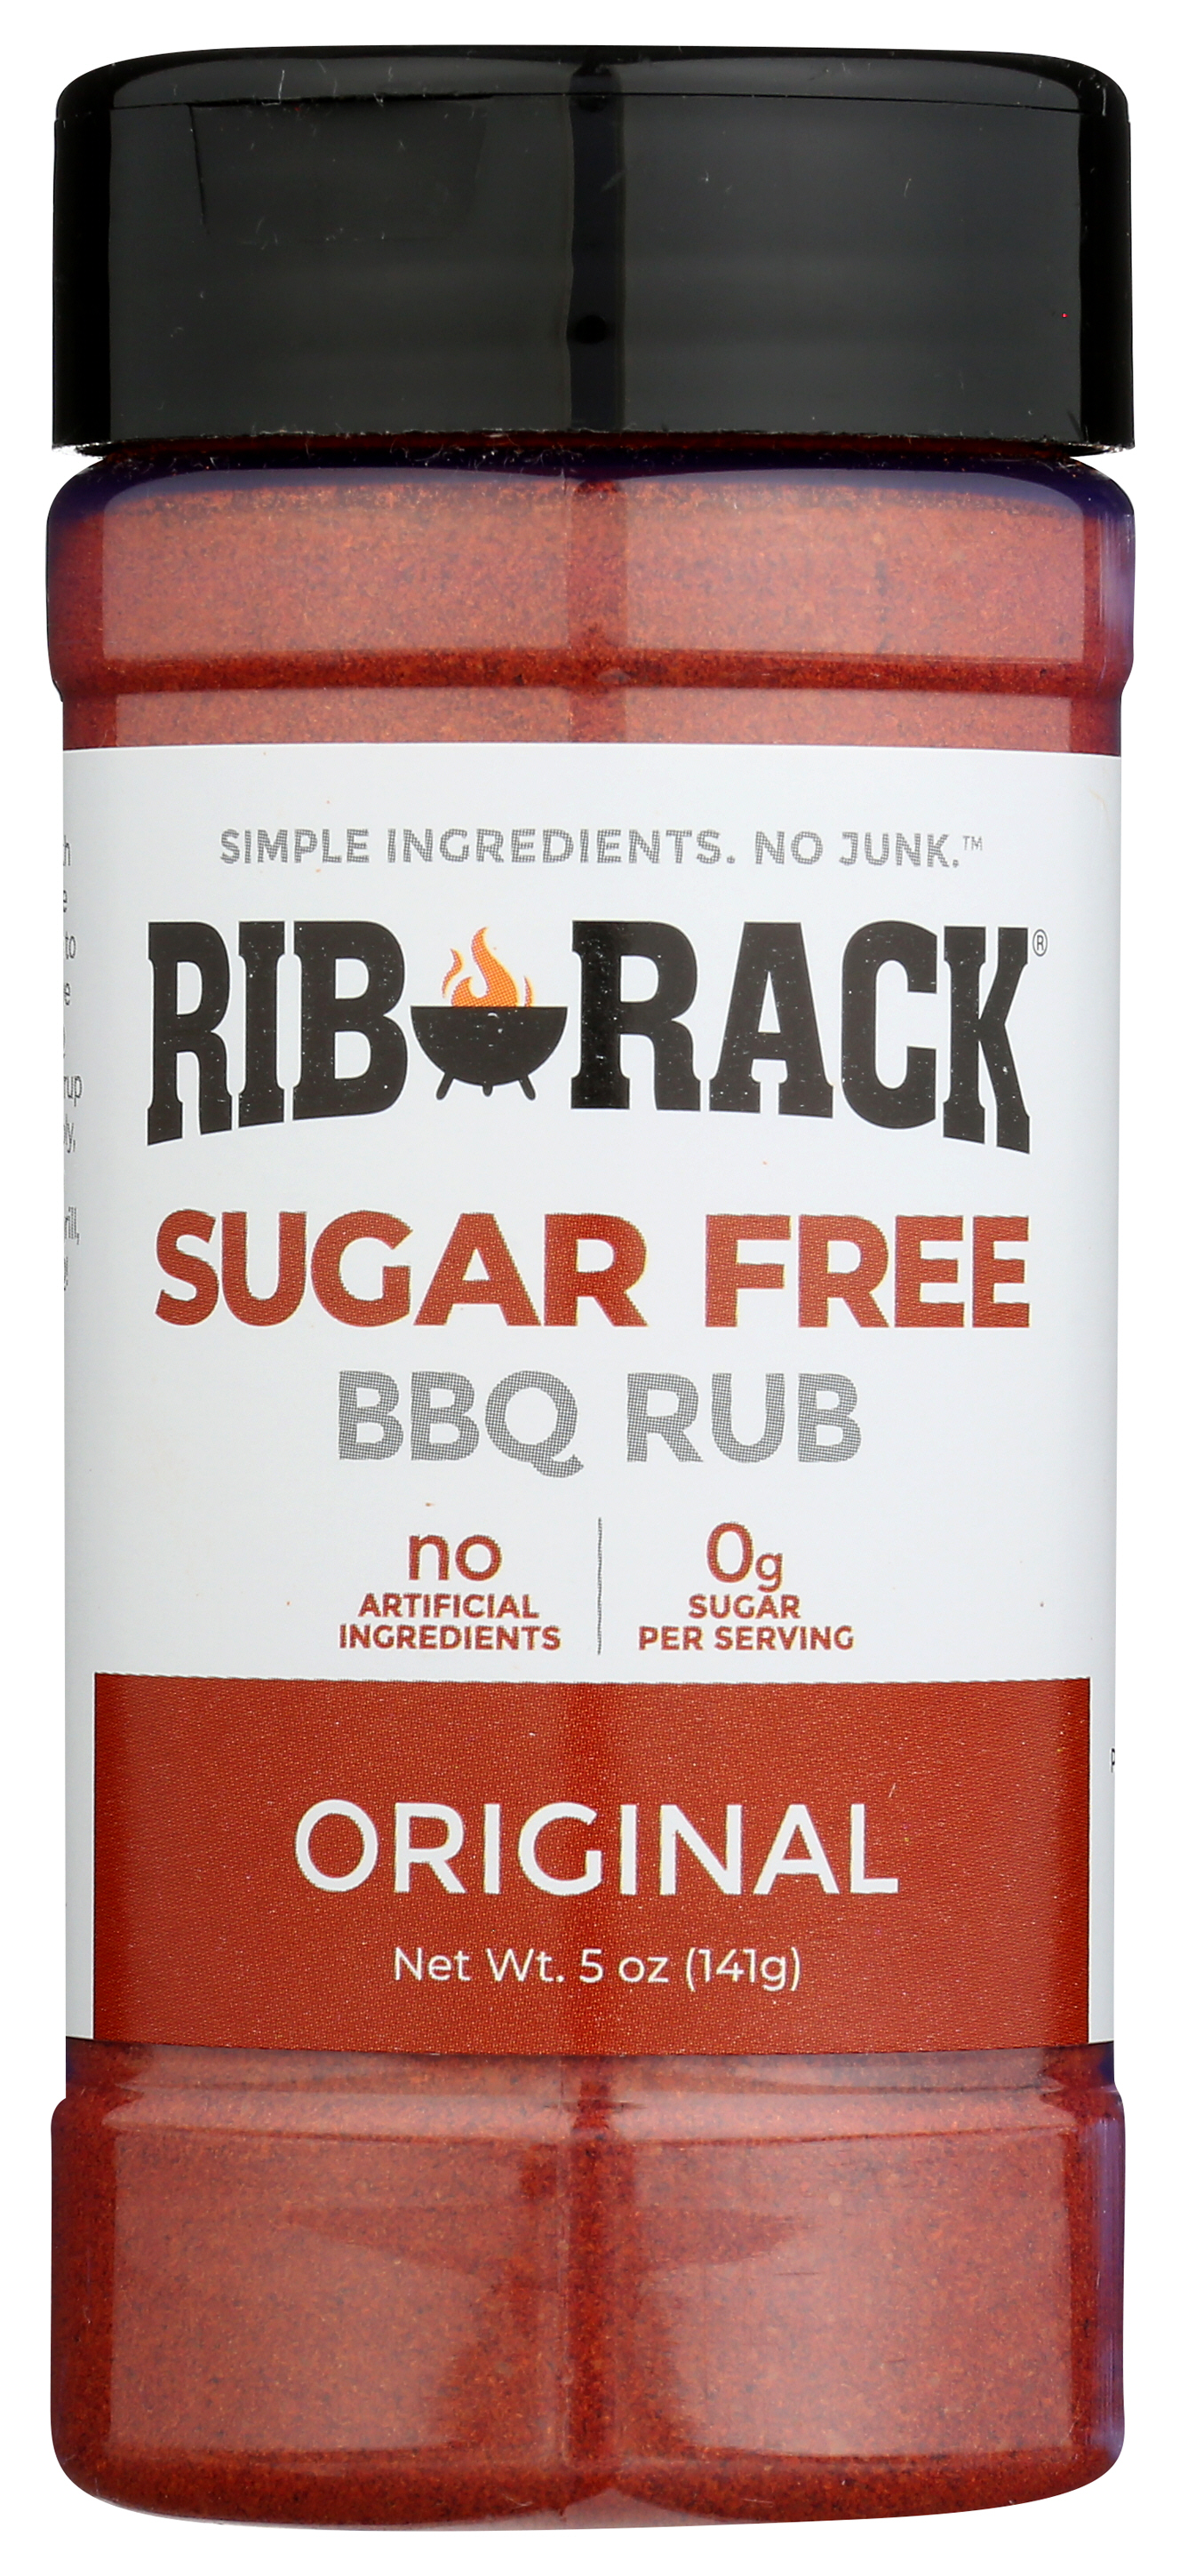 Rib Rack Original Sugar Free BBQ Rub, 5 oz Pack Of 6 - image 1 of 3